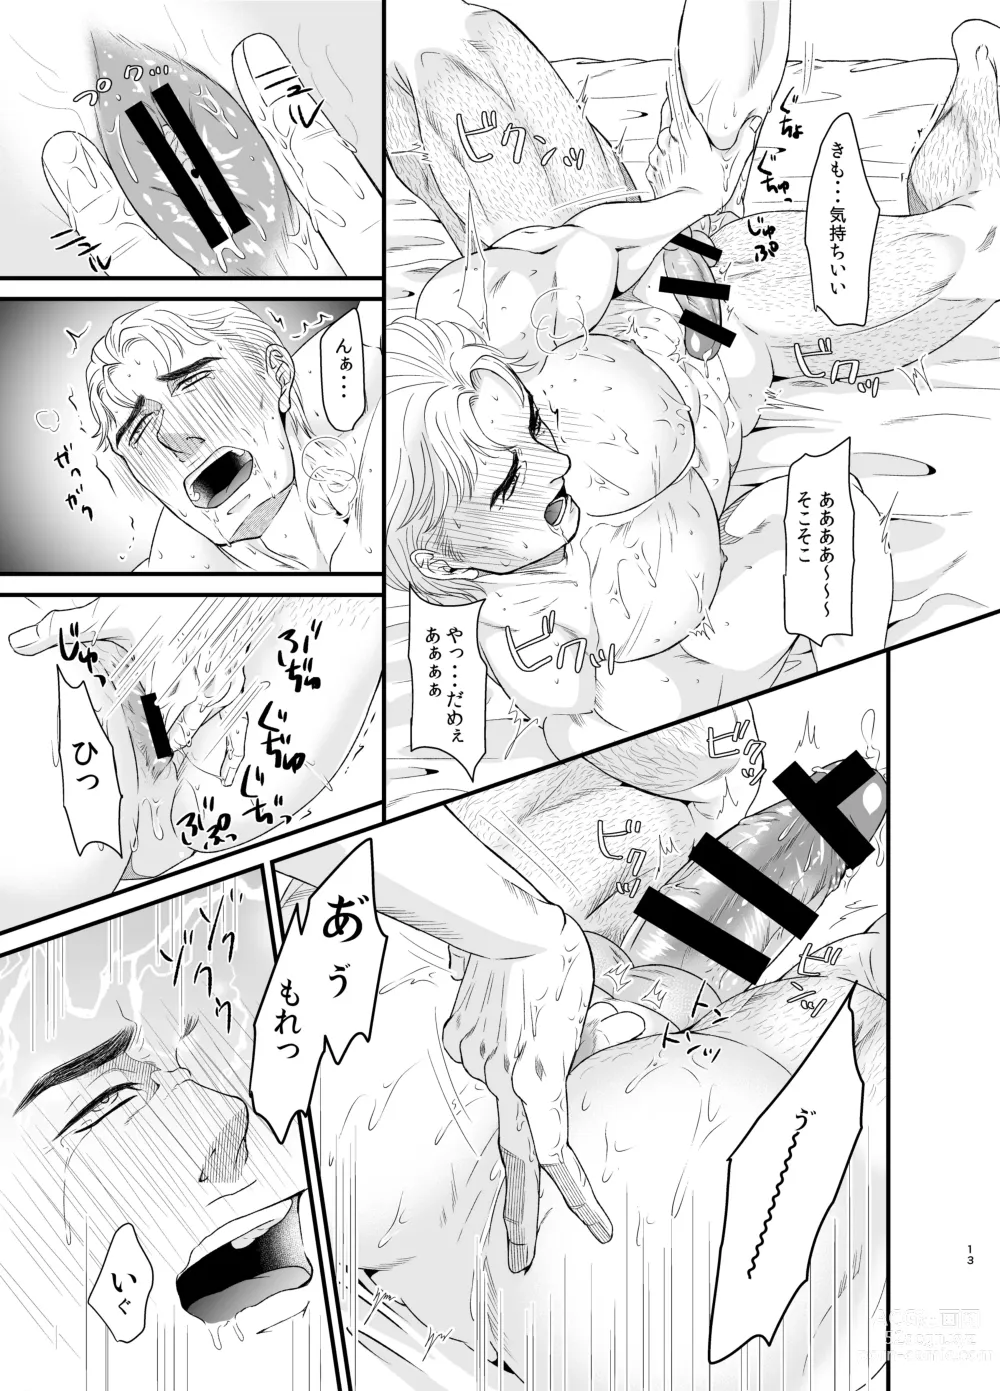 Page 12 of doujinshi Feeling Good